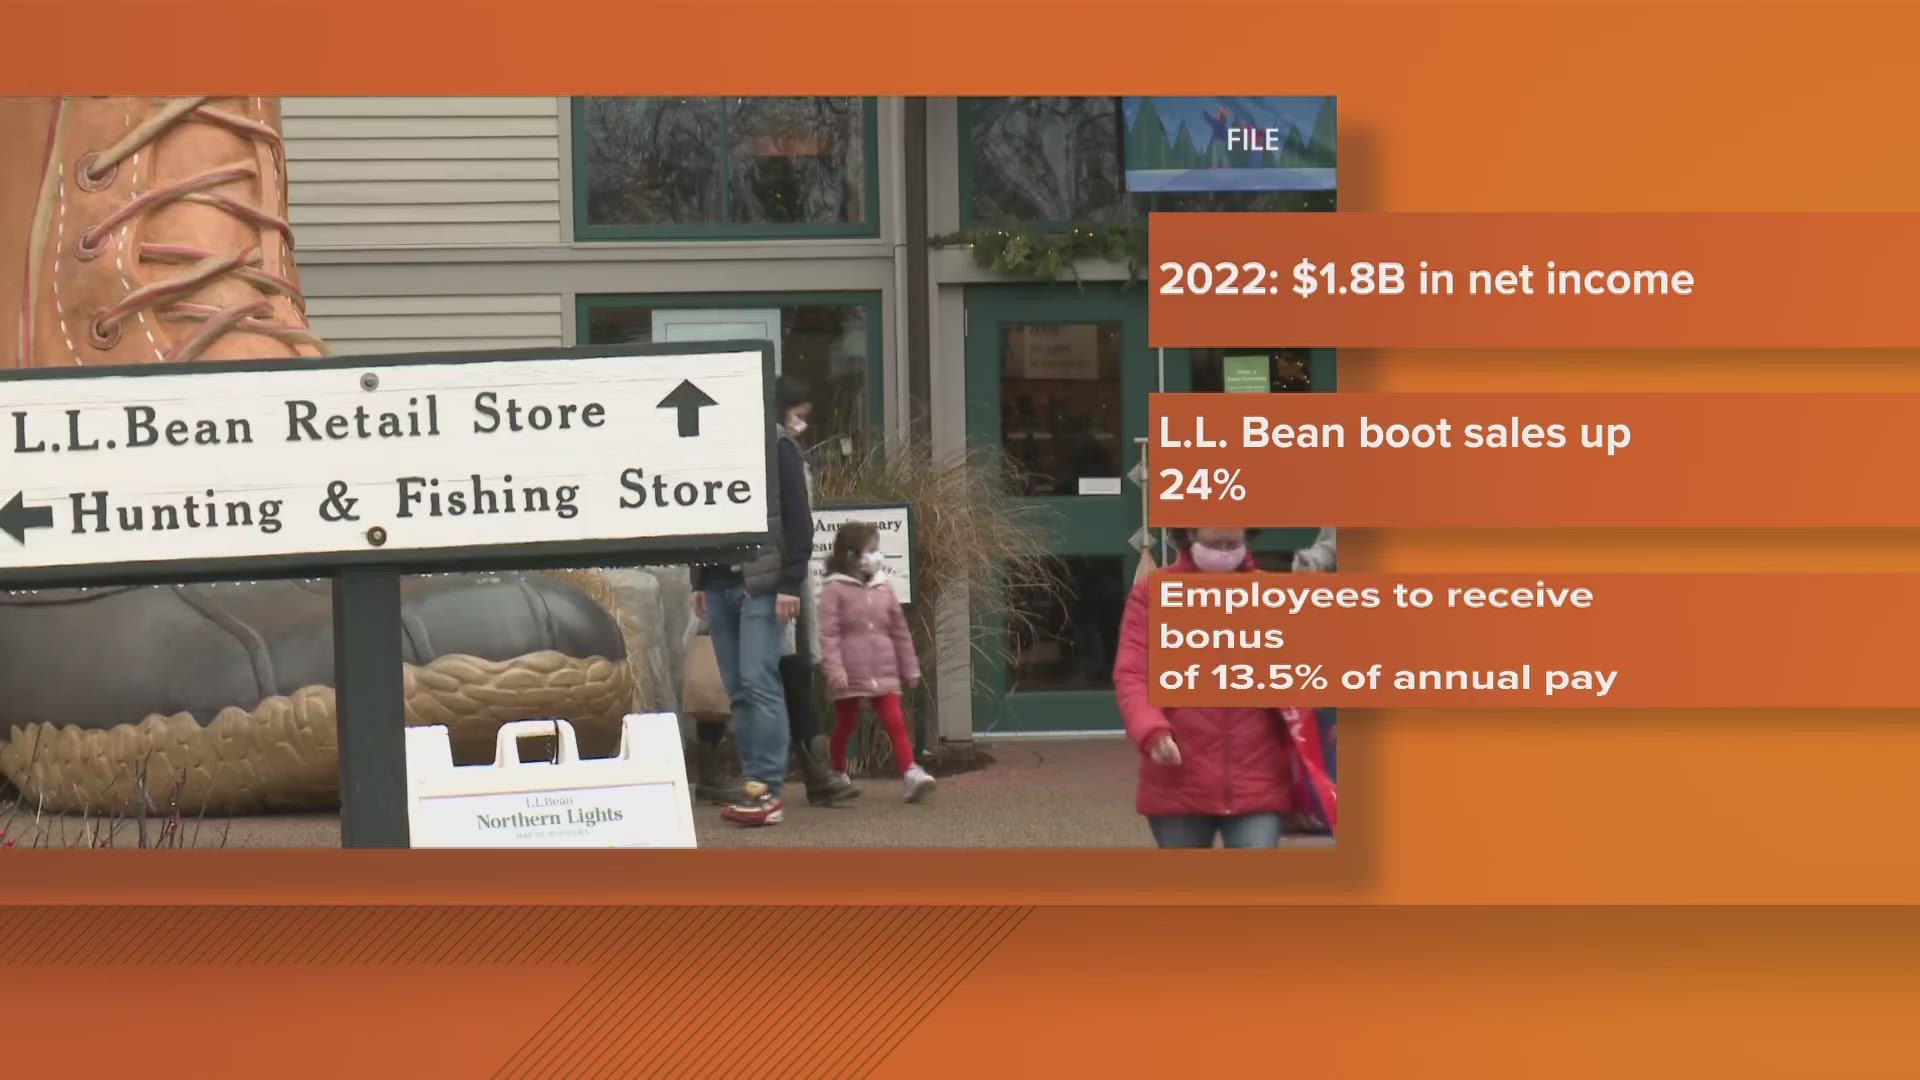 L.L. Bean said it brought in $1.8 billion in net income in 2022.